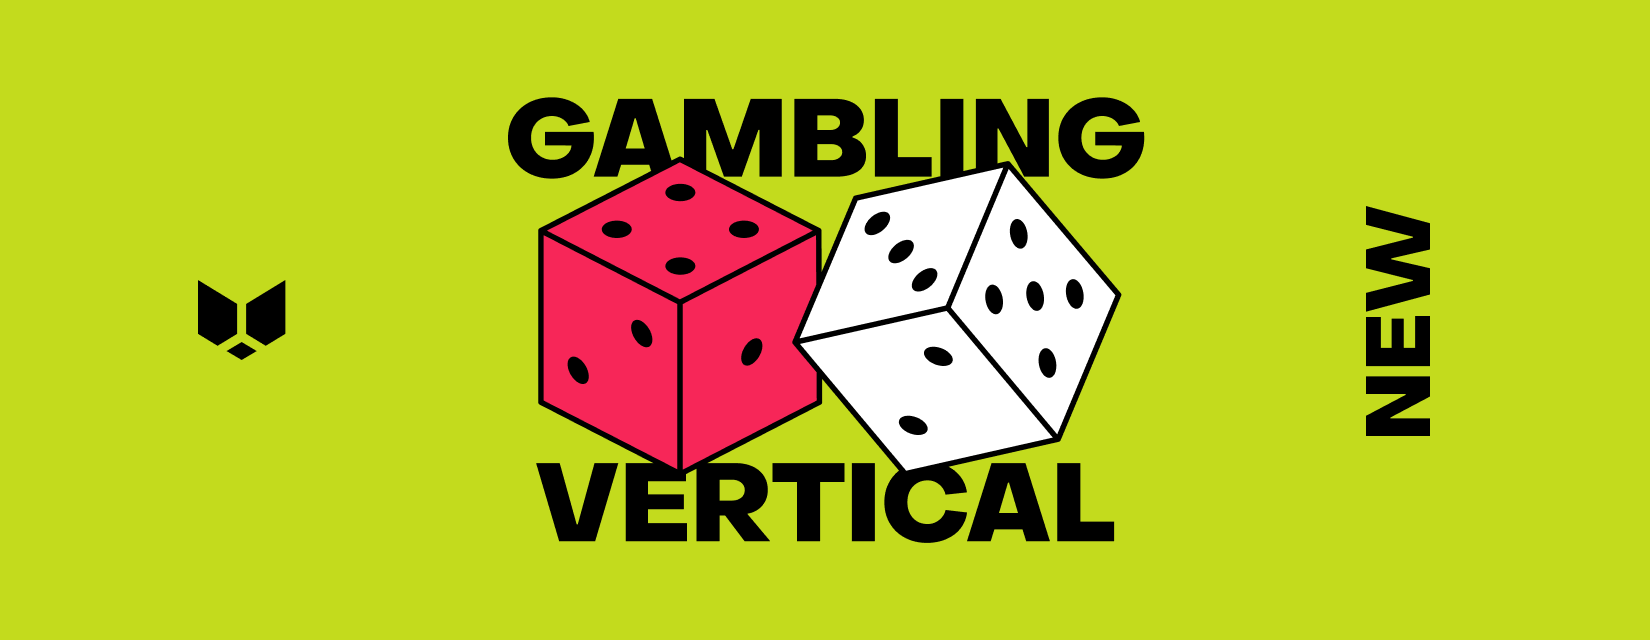 Gambling Vertical 